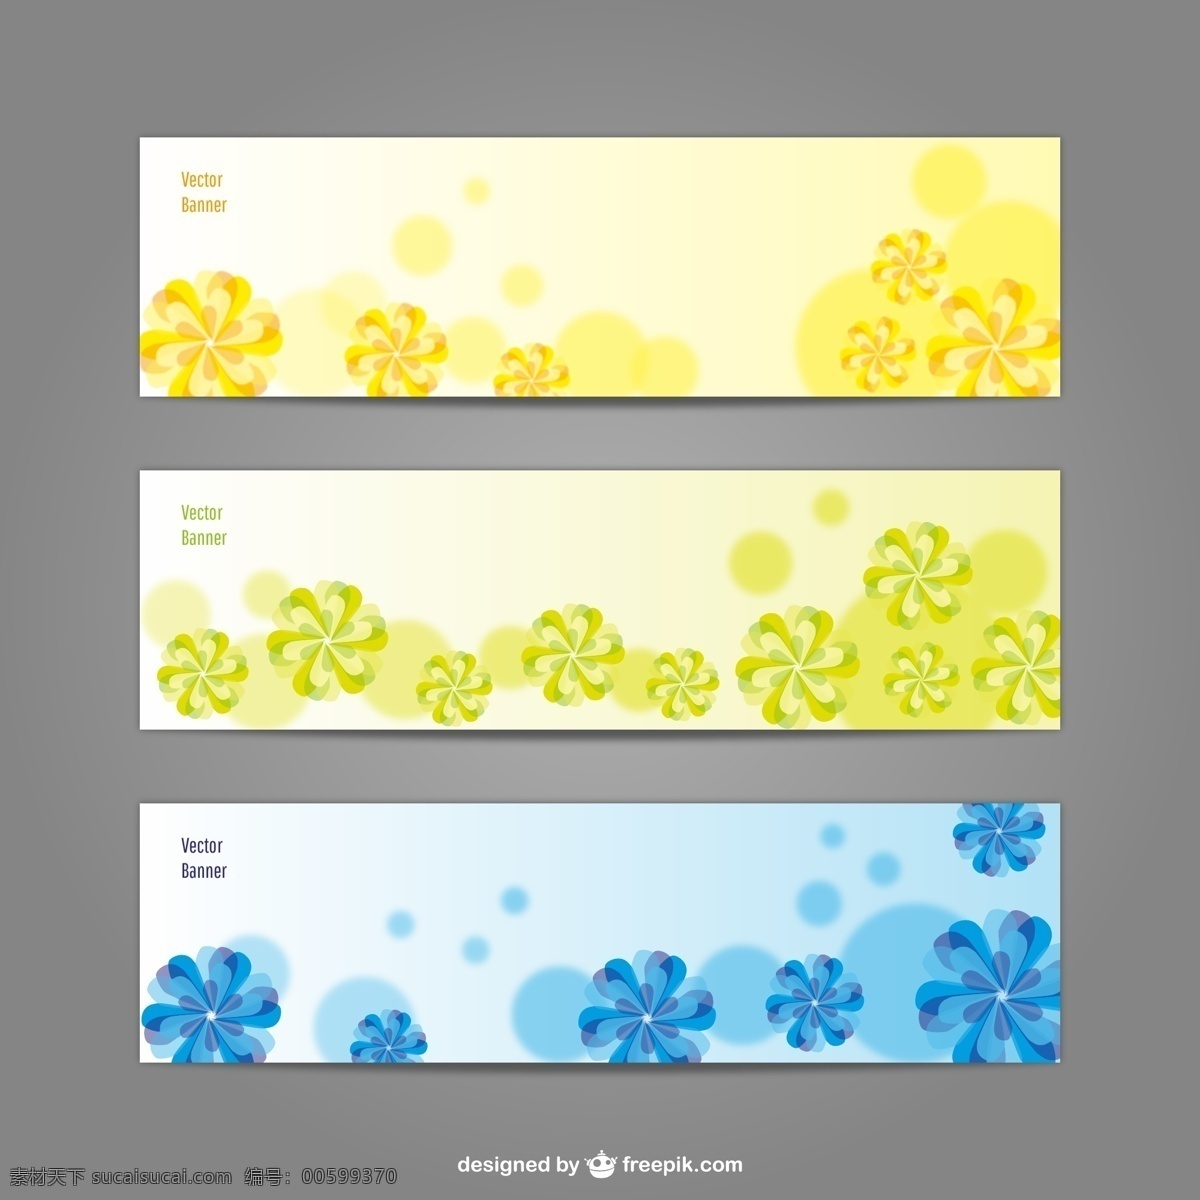 绿色 黄色 蓝色 花 横幅 旗帜 花卉 模板 壁纸 图形 布局 宣传 广告 平面设计 元素 现代 插图 设计元素 背景 白色